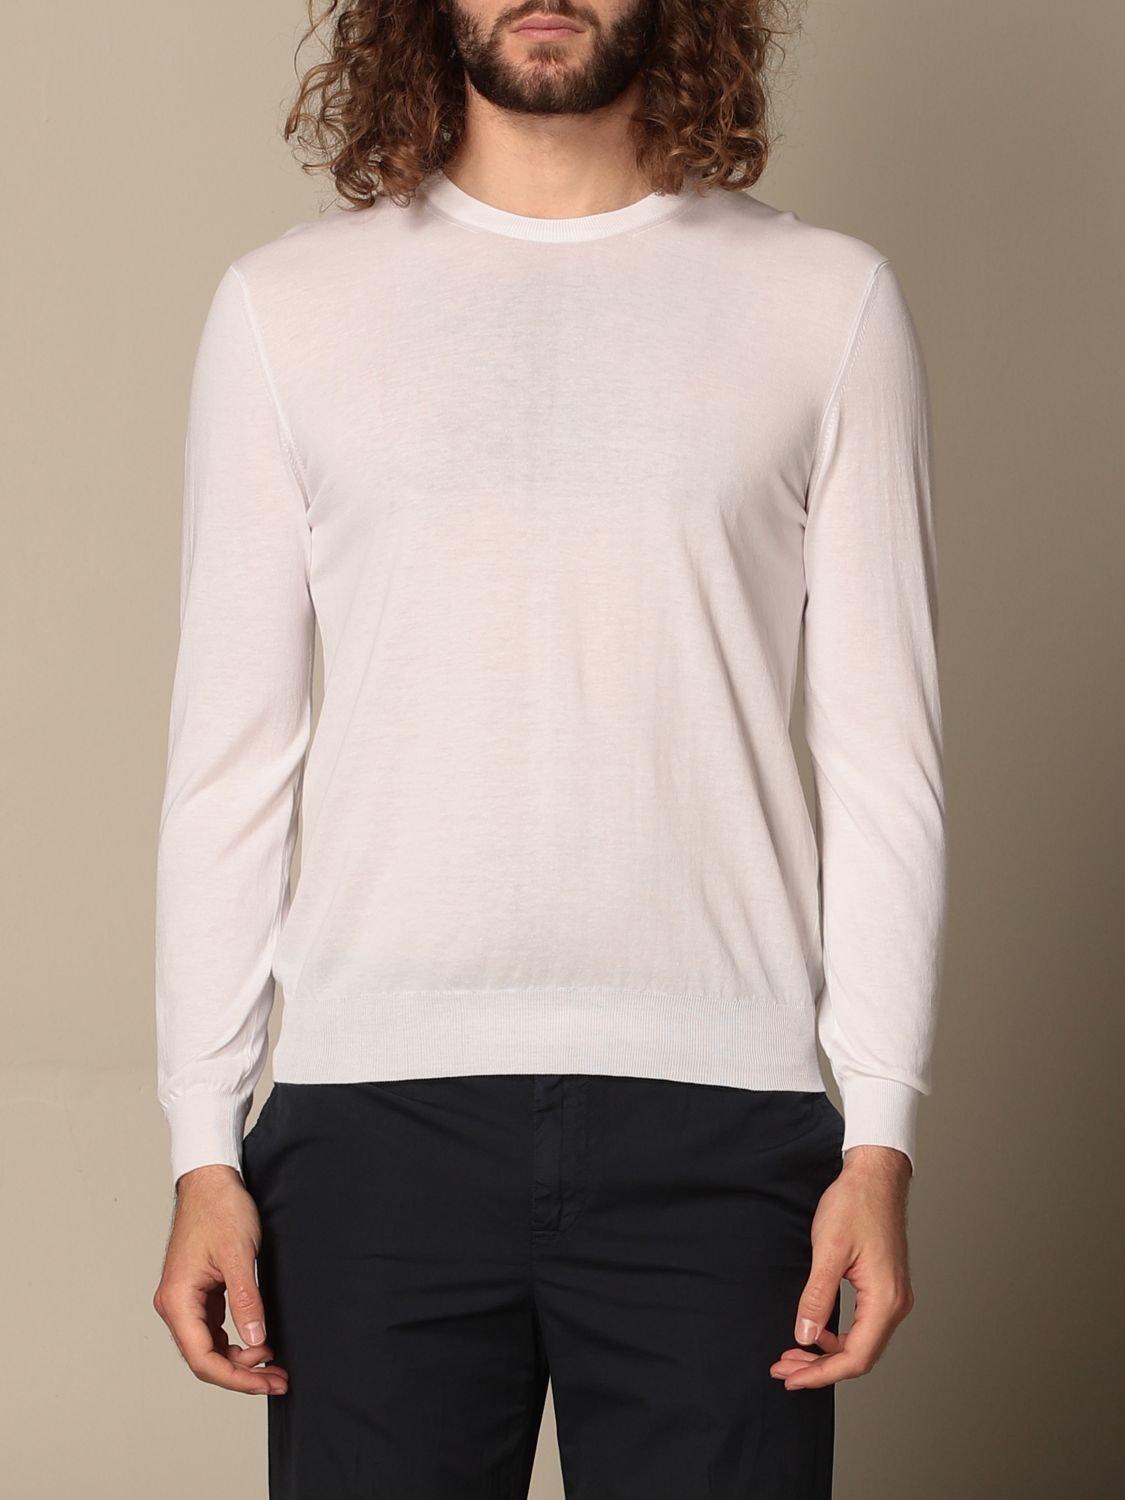 Sweater Altea: Altea sweater for man white 1